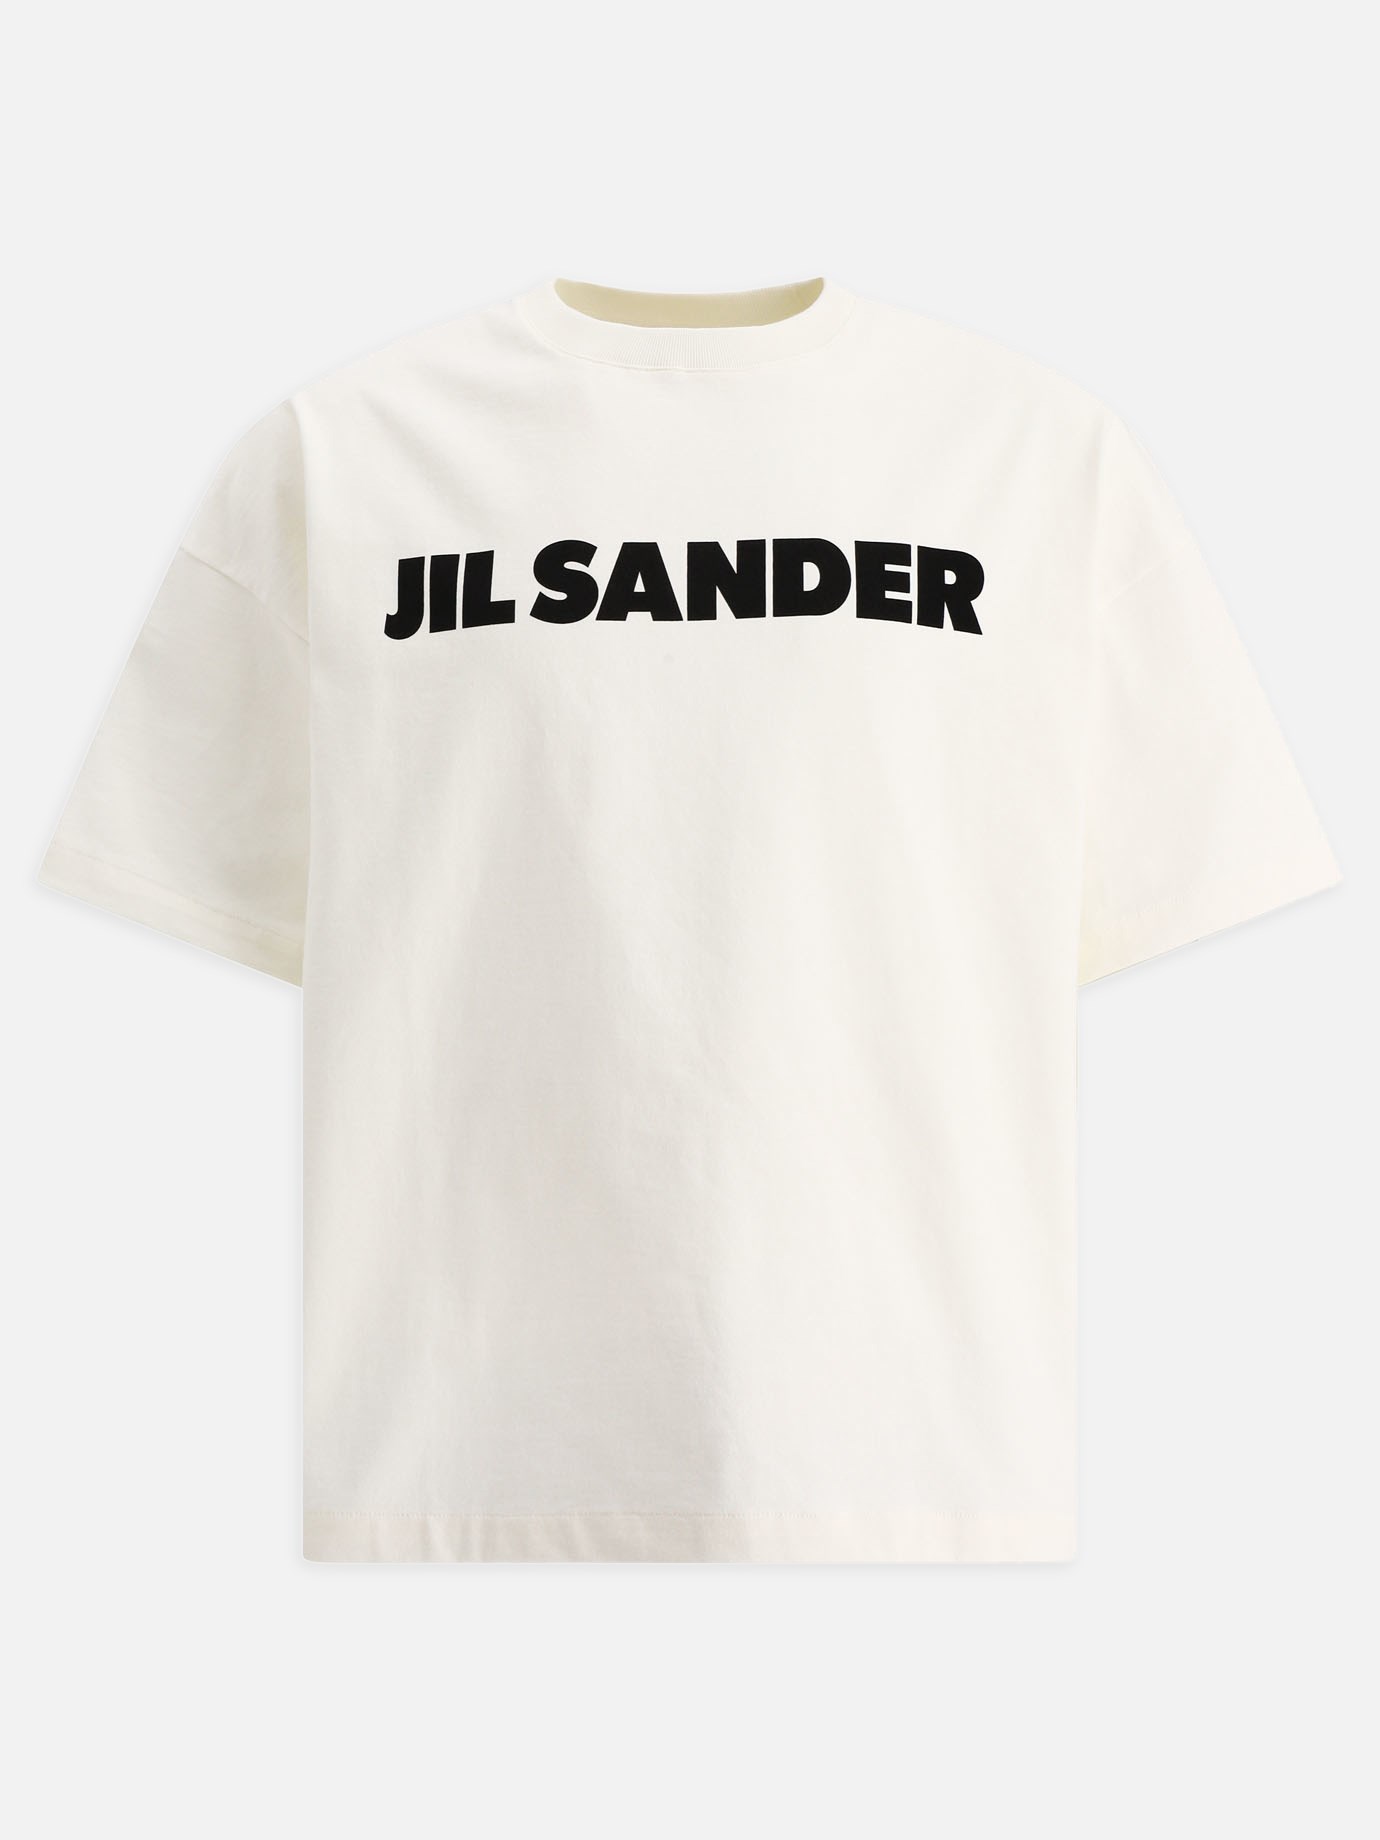  Jil Sander  t-shirtby Jil Sander - 1